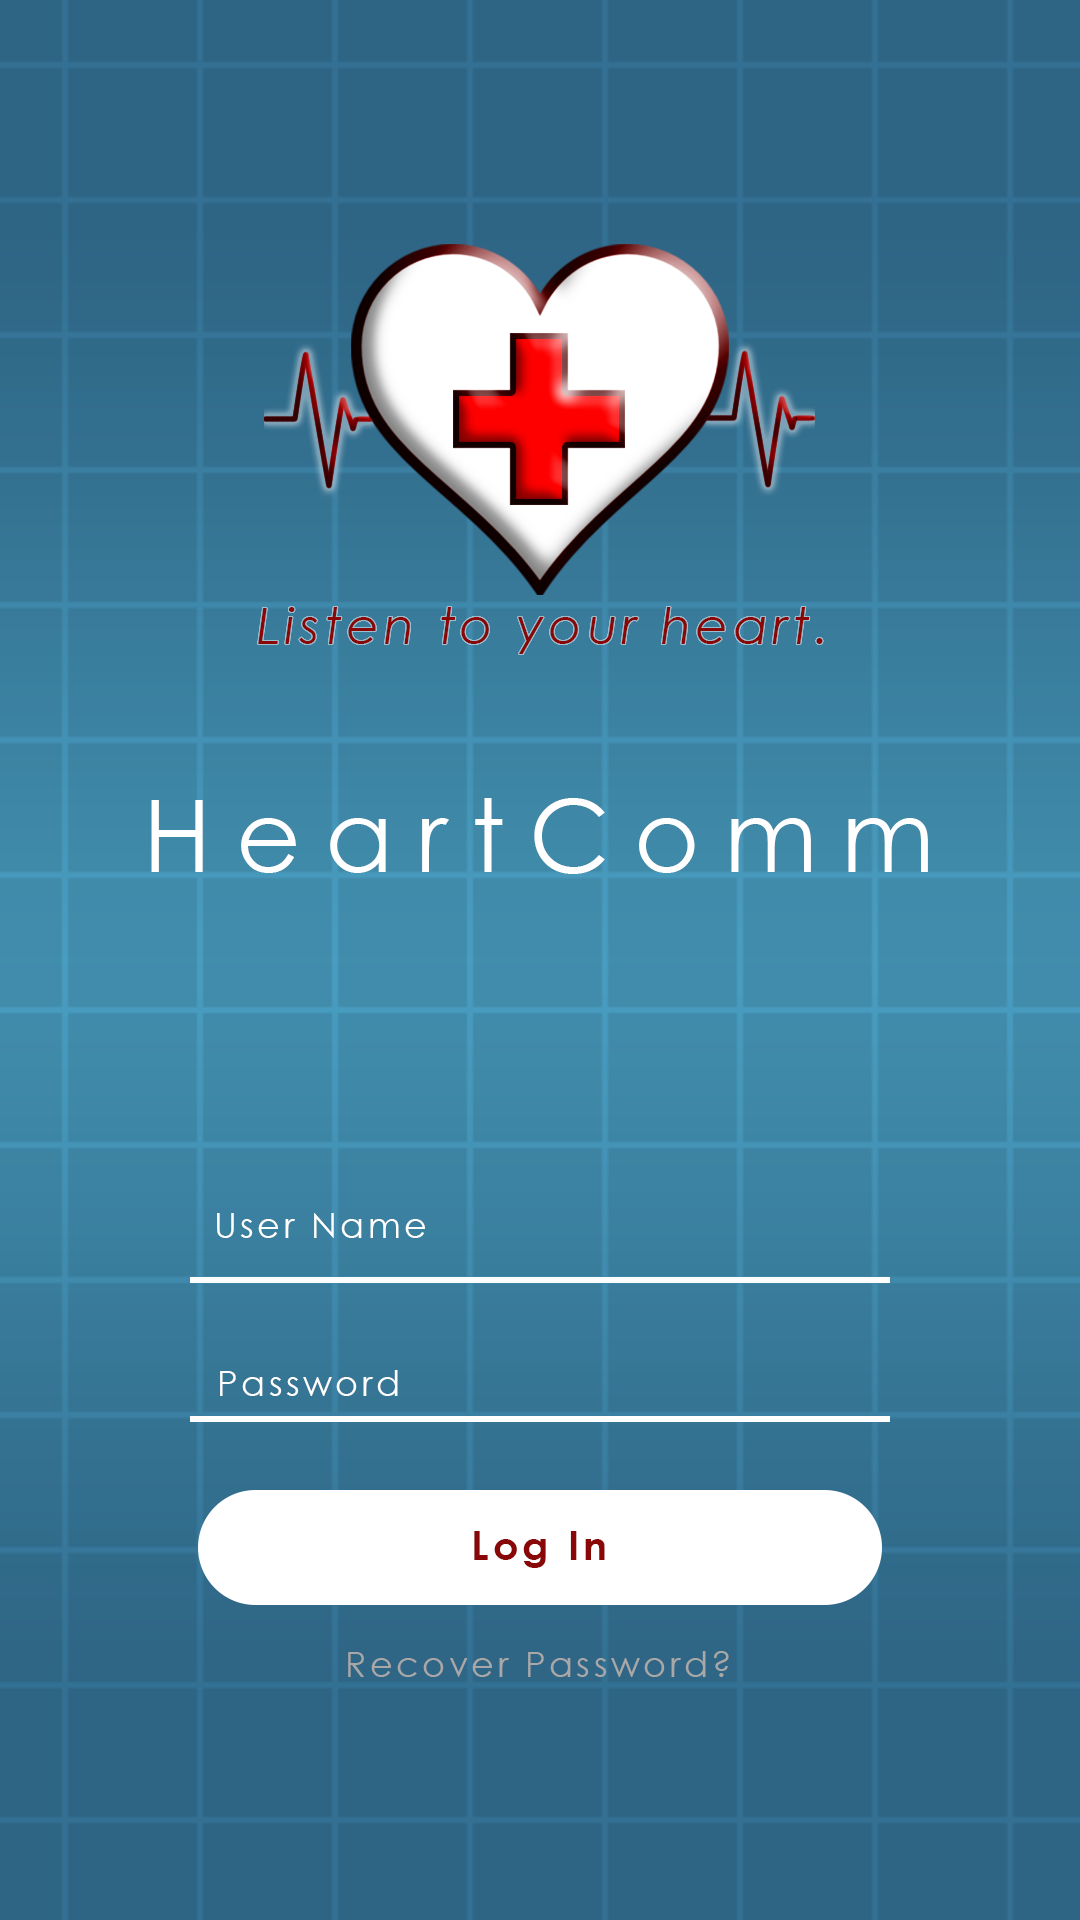 HeartComm App Login Page